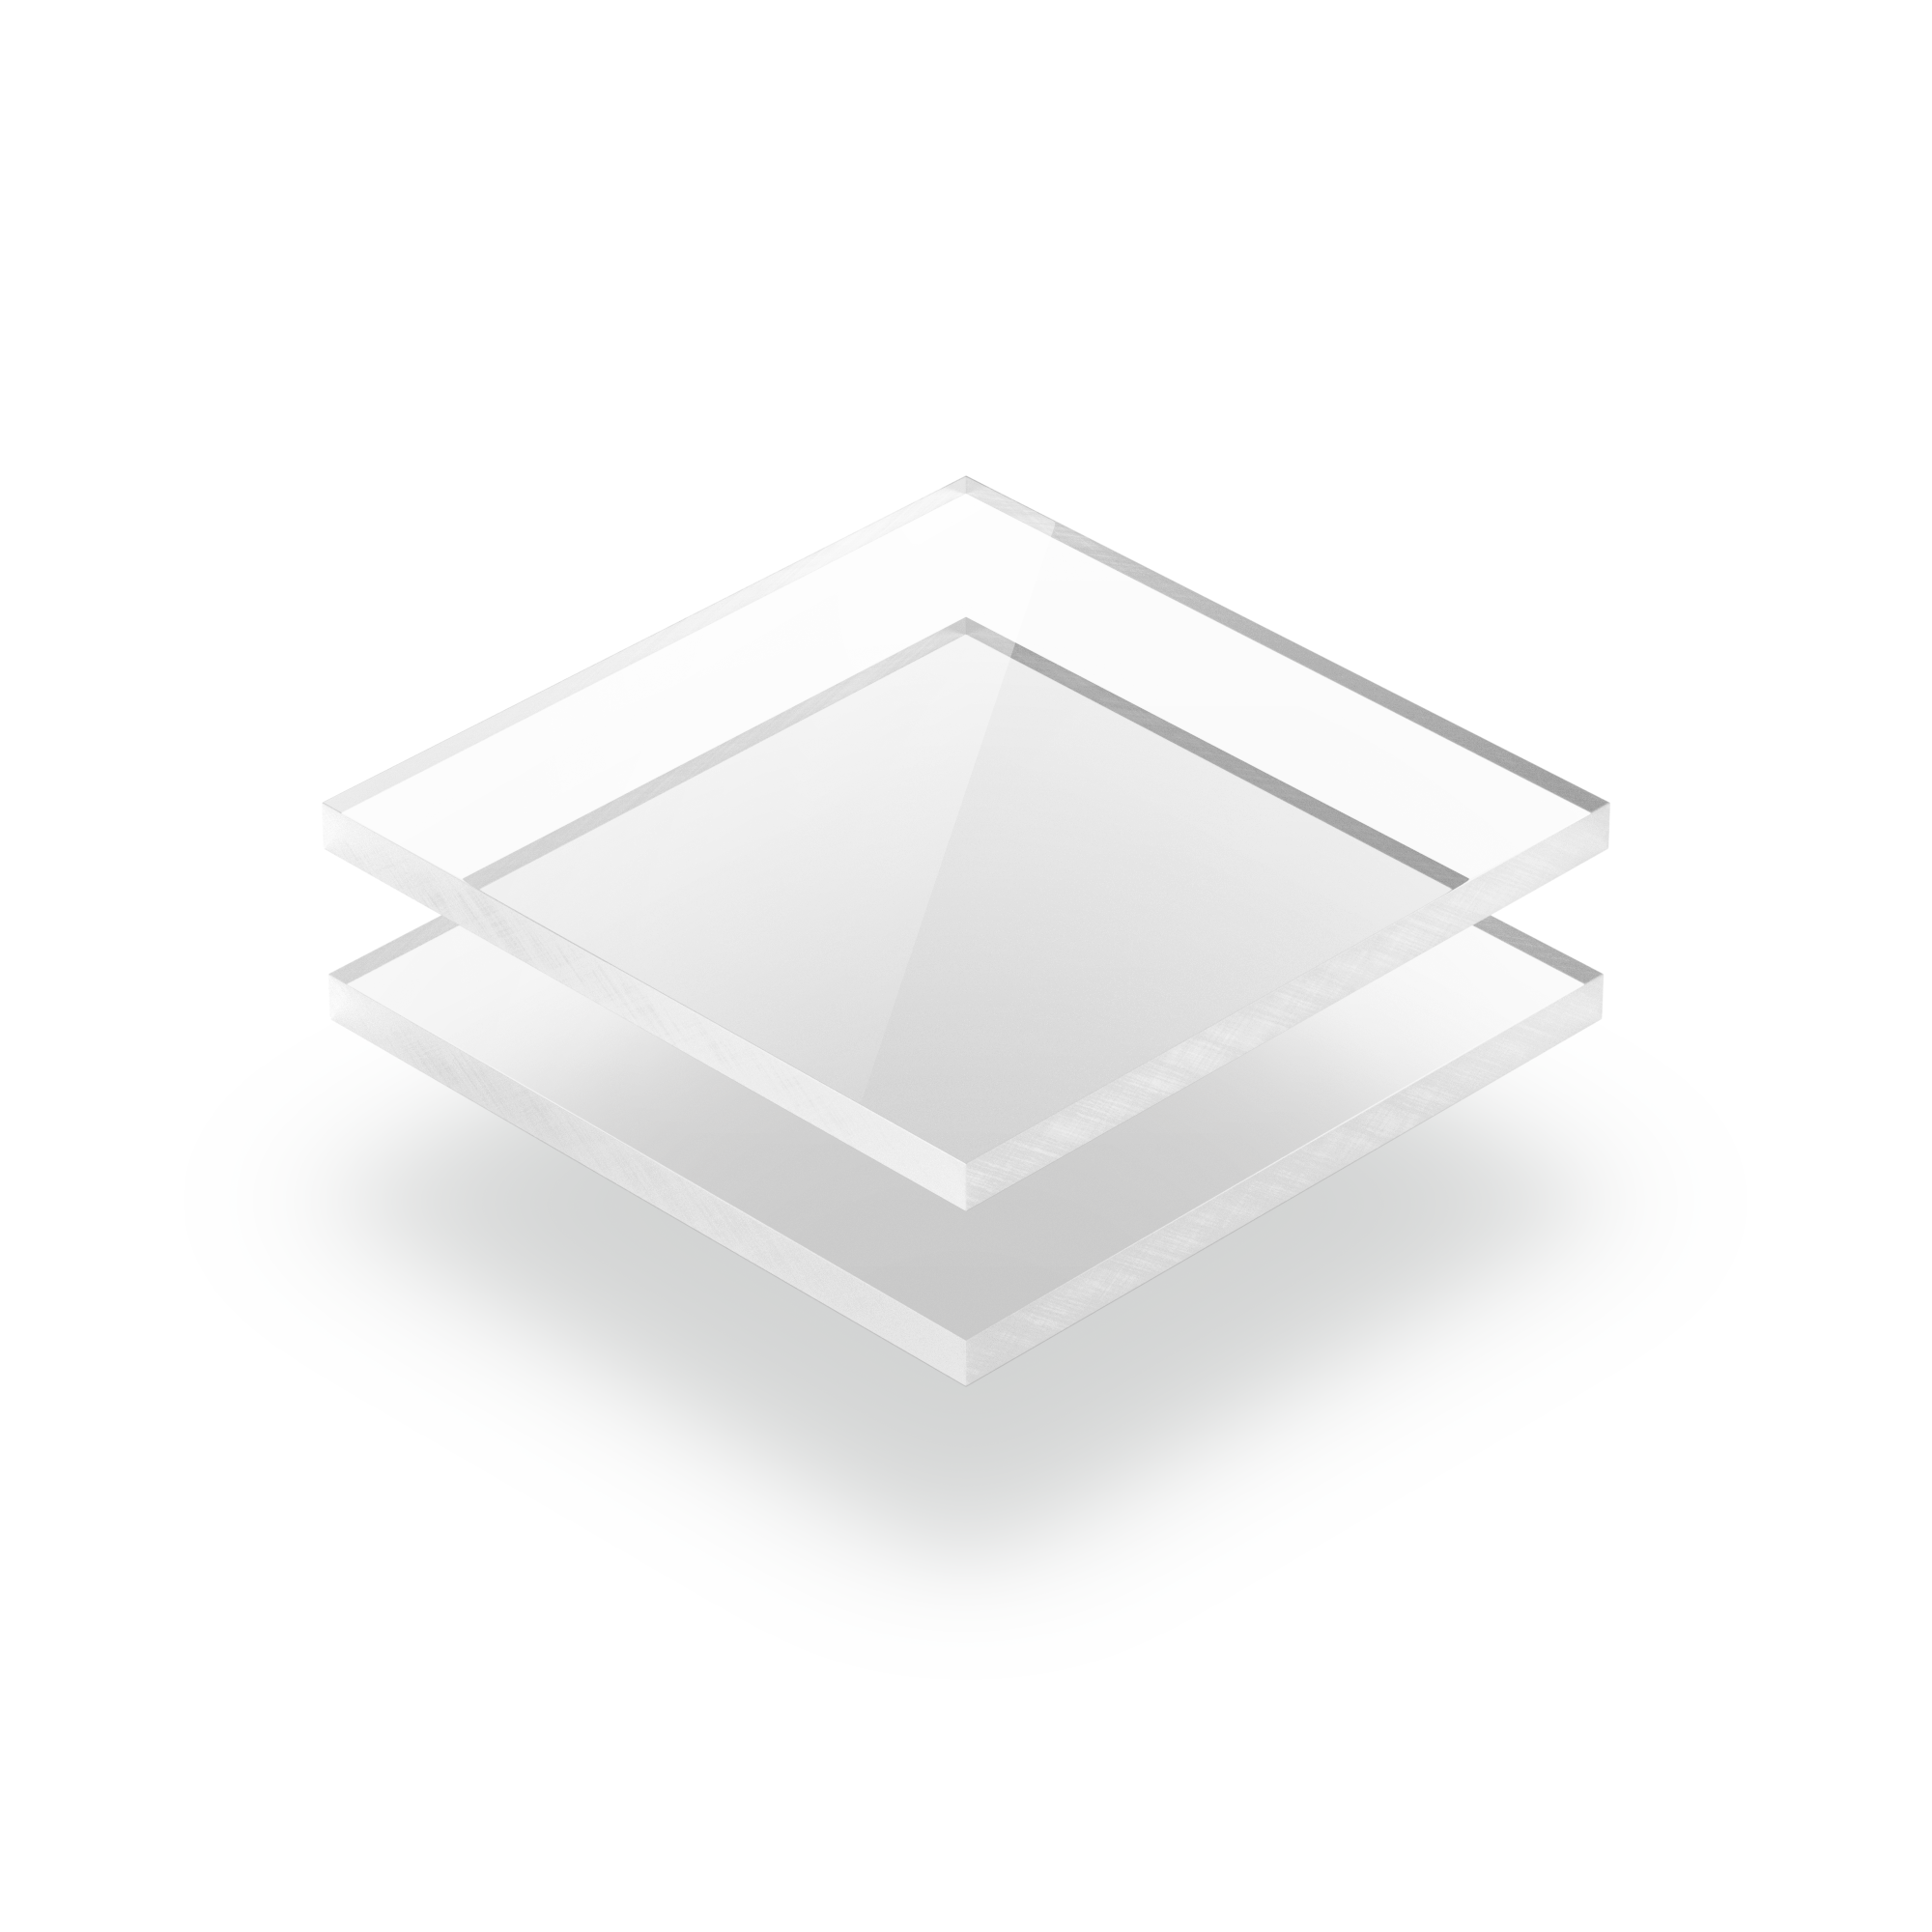 Plaque polycarbonate transparent 4mm